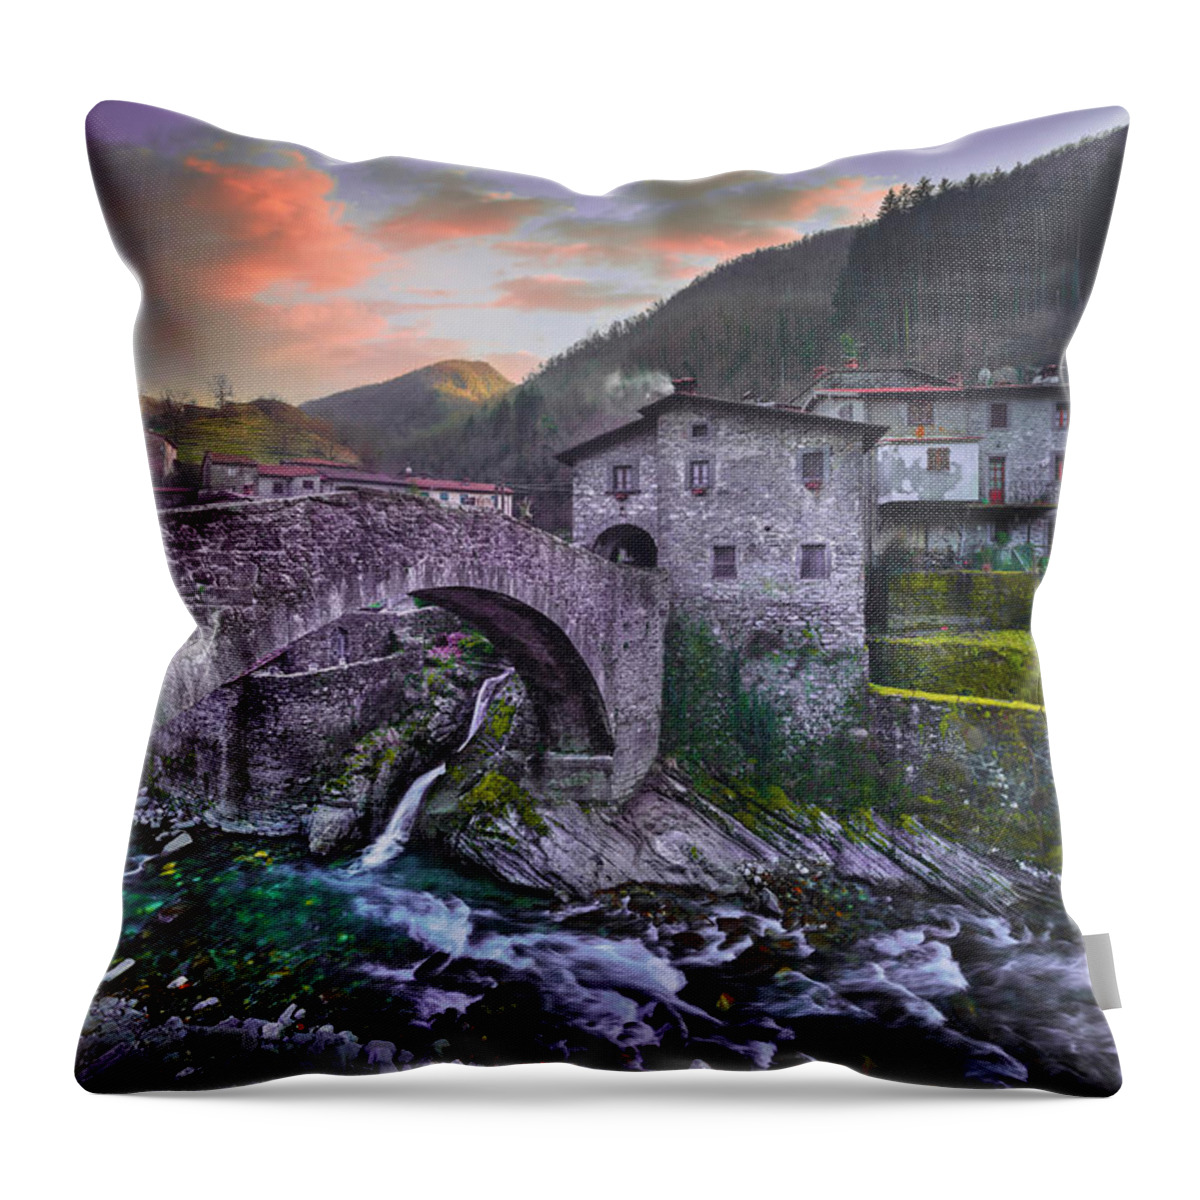 Bridge Throw Pillow featuring the photograph Fabbriche di Vallico, the Bridge and the Creek by Stefano Orazzini